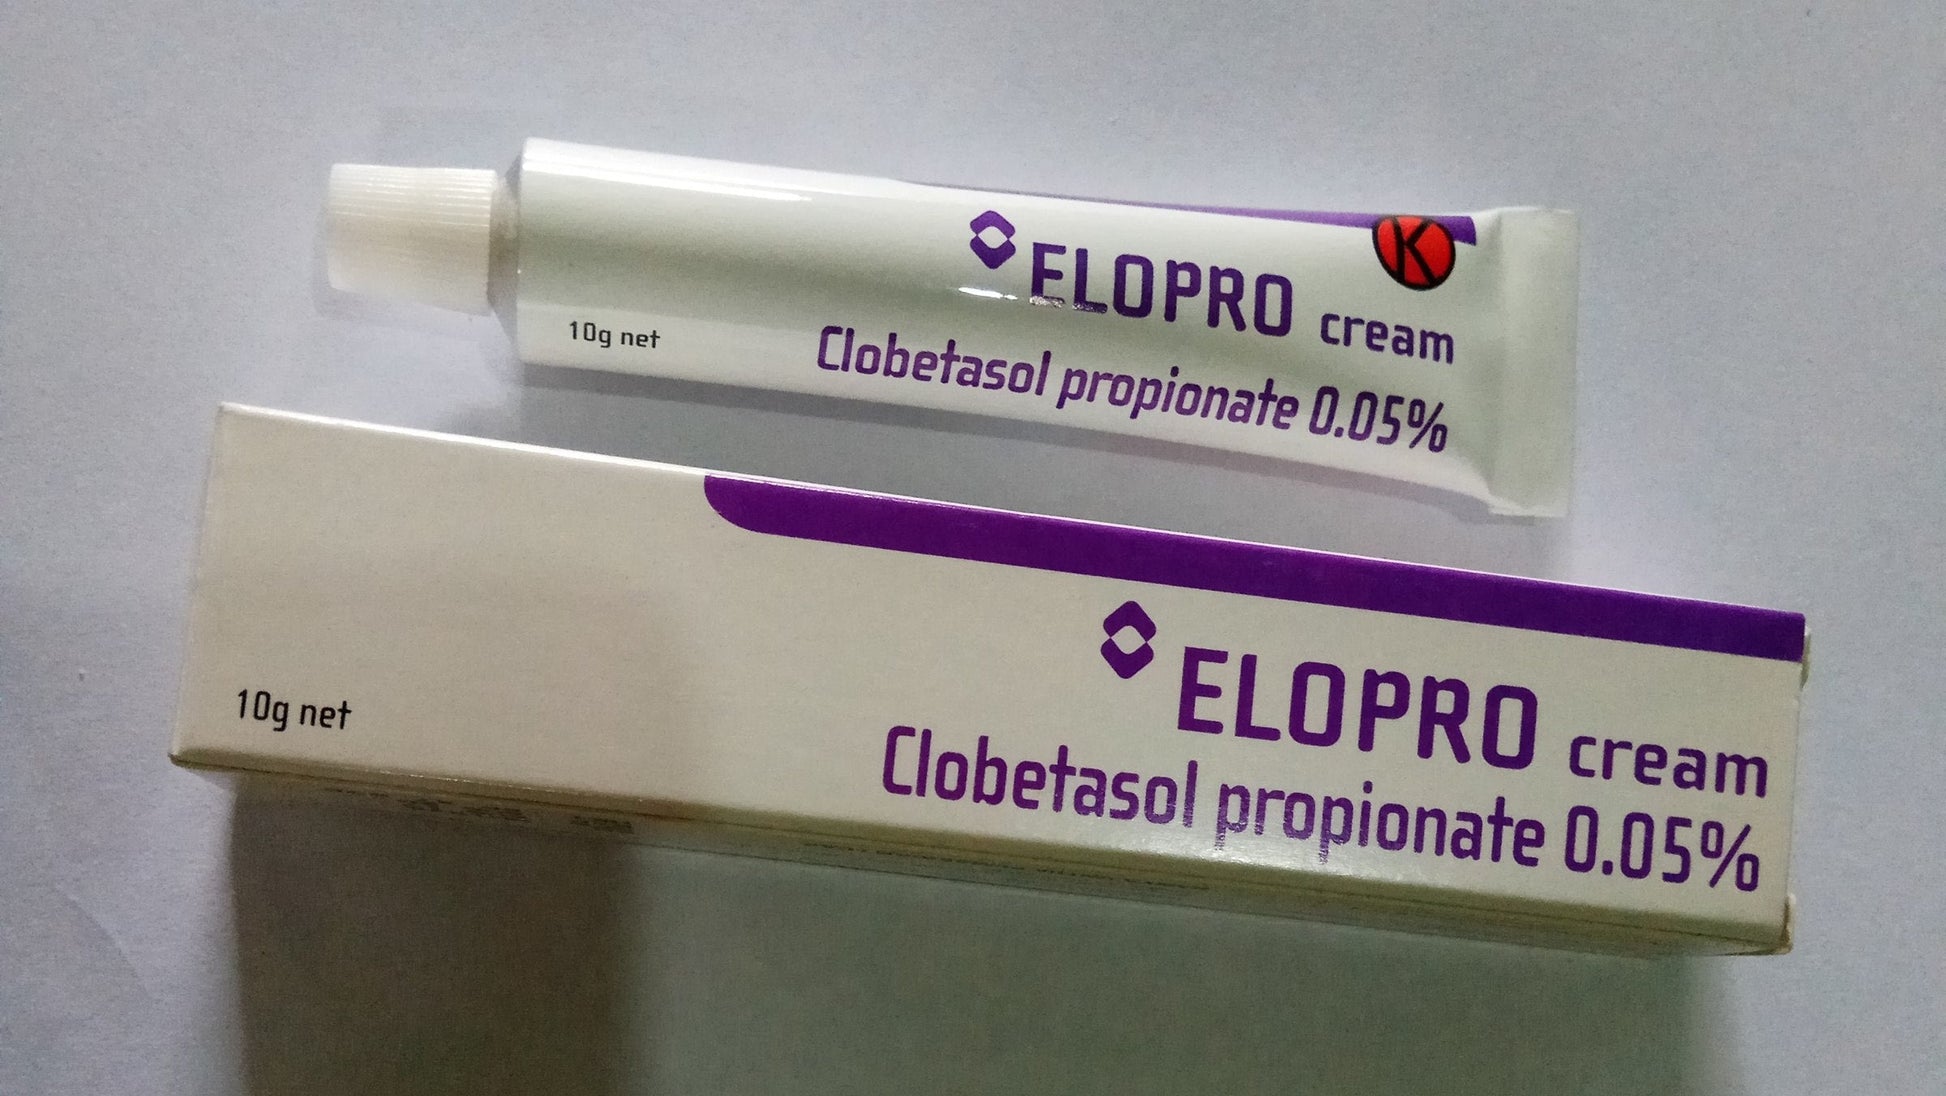 Clobetasol Propionate Cream 0.05% Elopro 10g